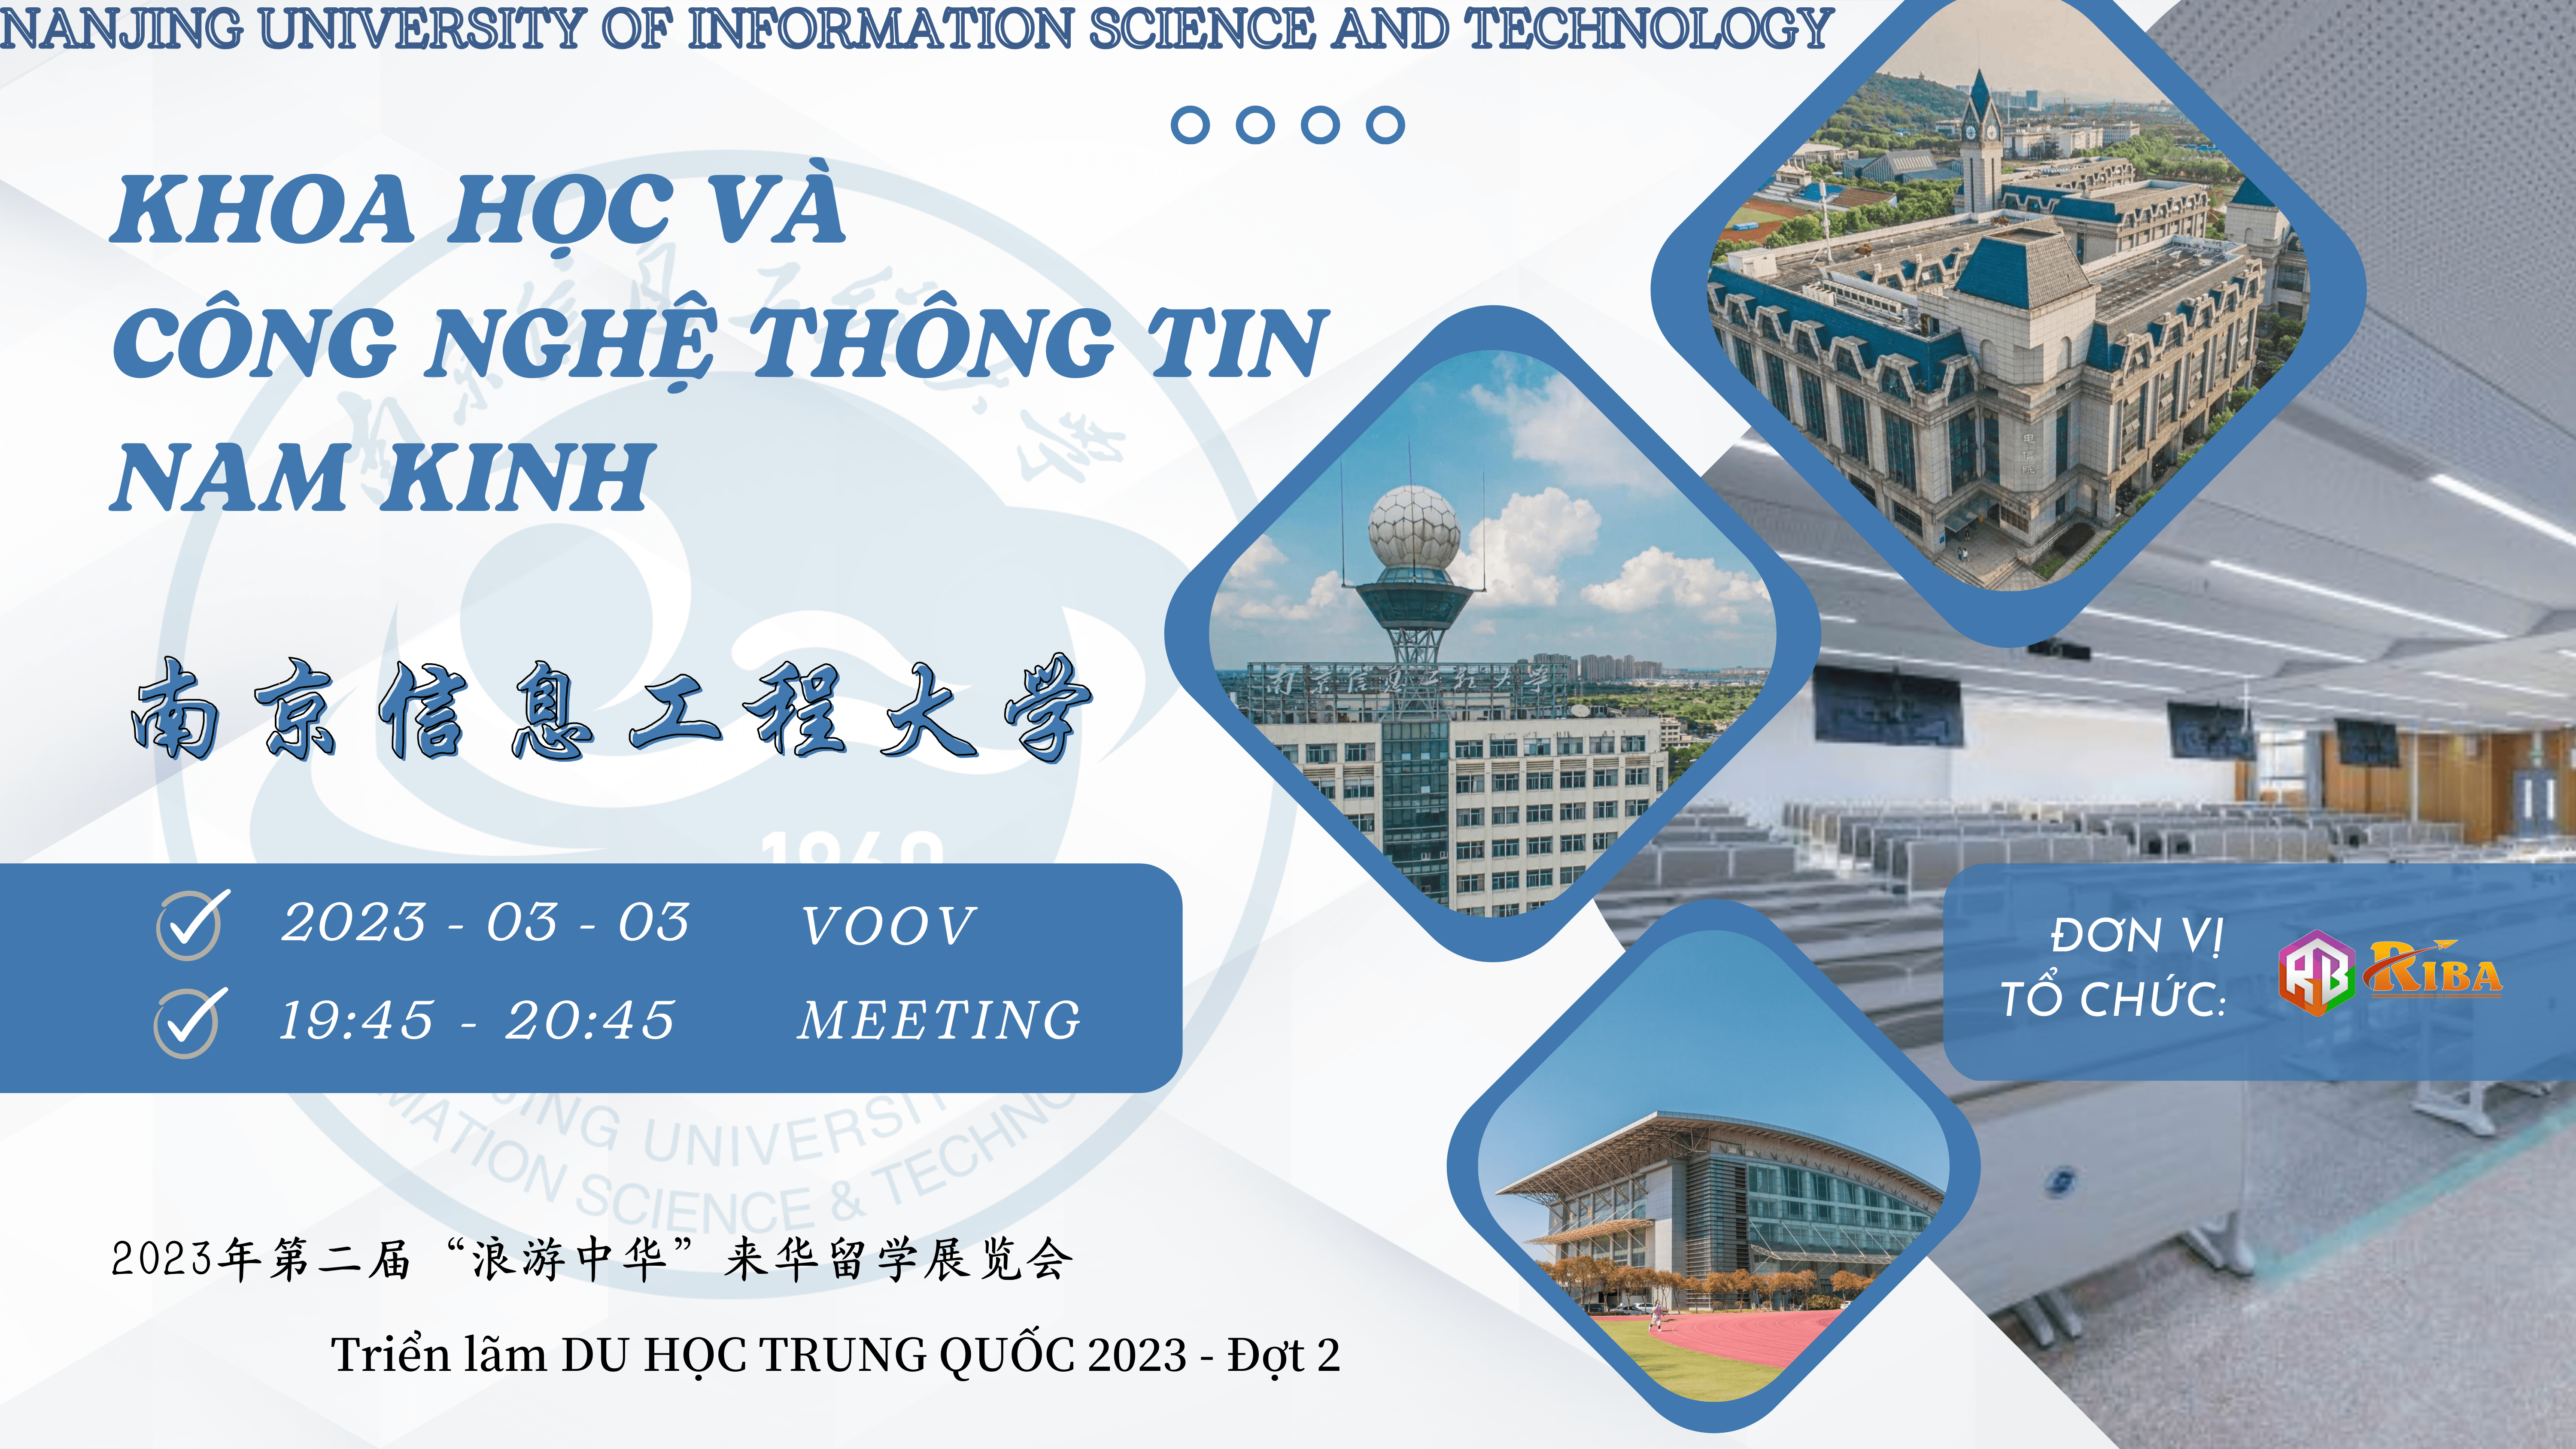 Đại học Khoa học và Công nghệ Thông tin Nam Kinh tại triển lãm “Lãng Du Trung Hoa 2023” đợt 2 có gì đặc biệt?